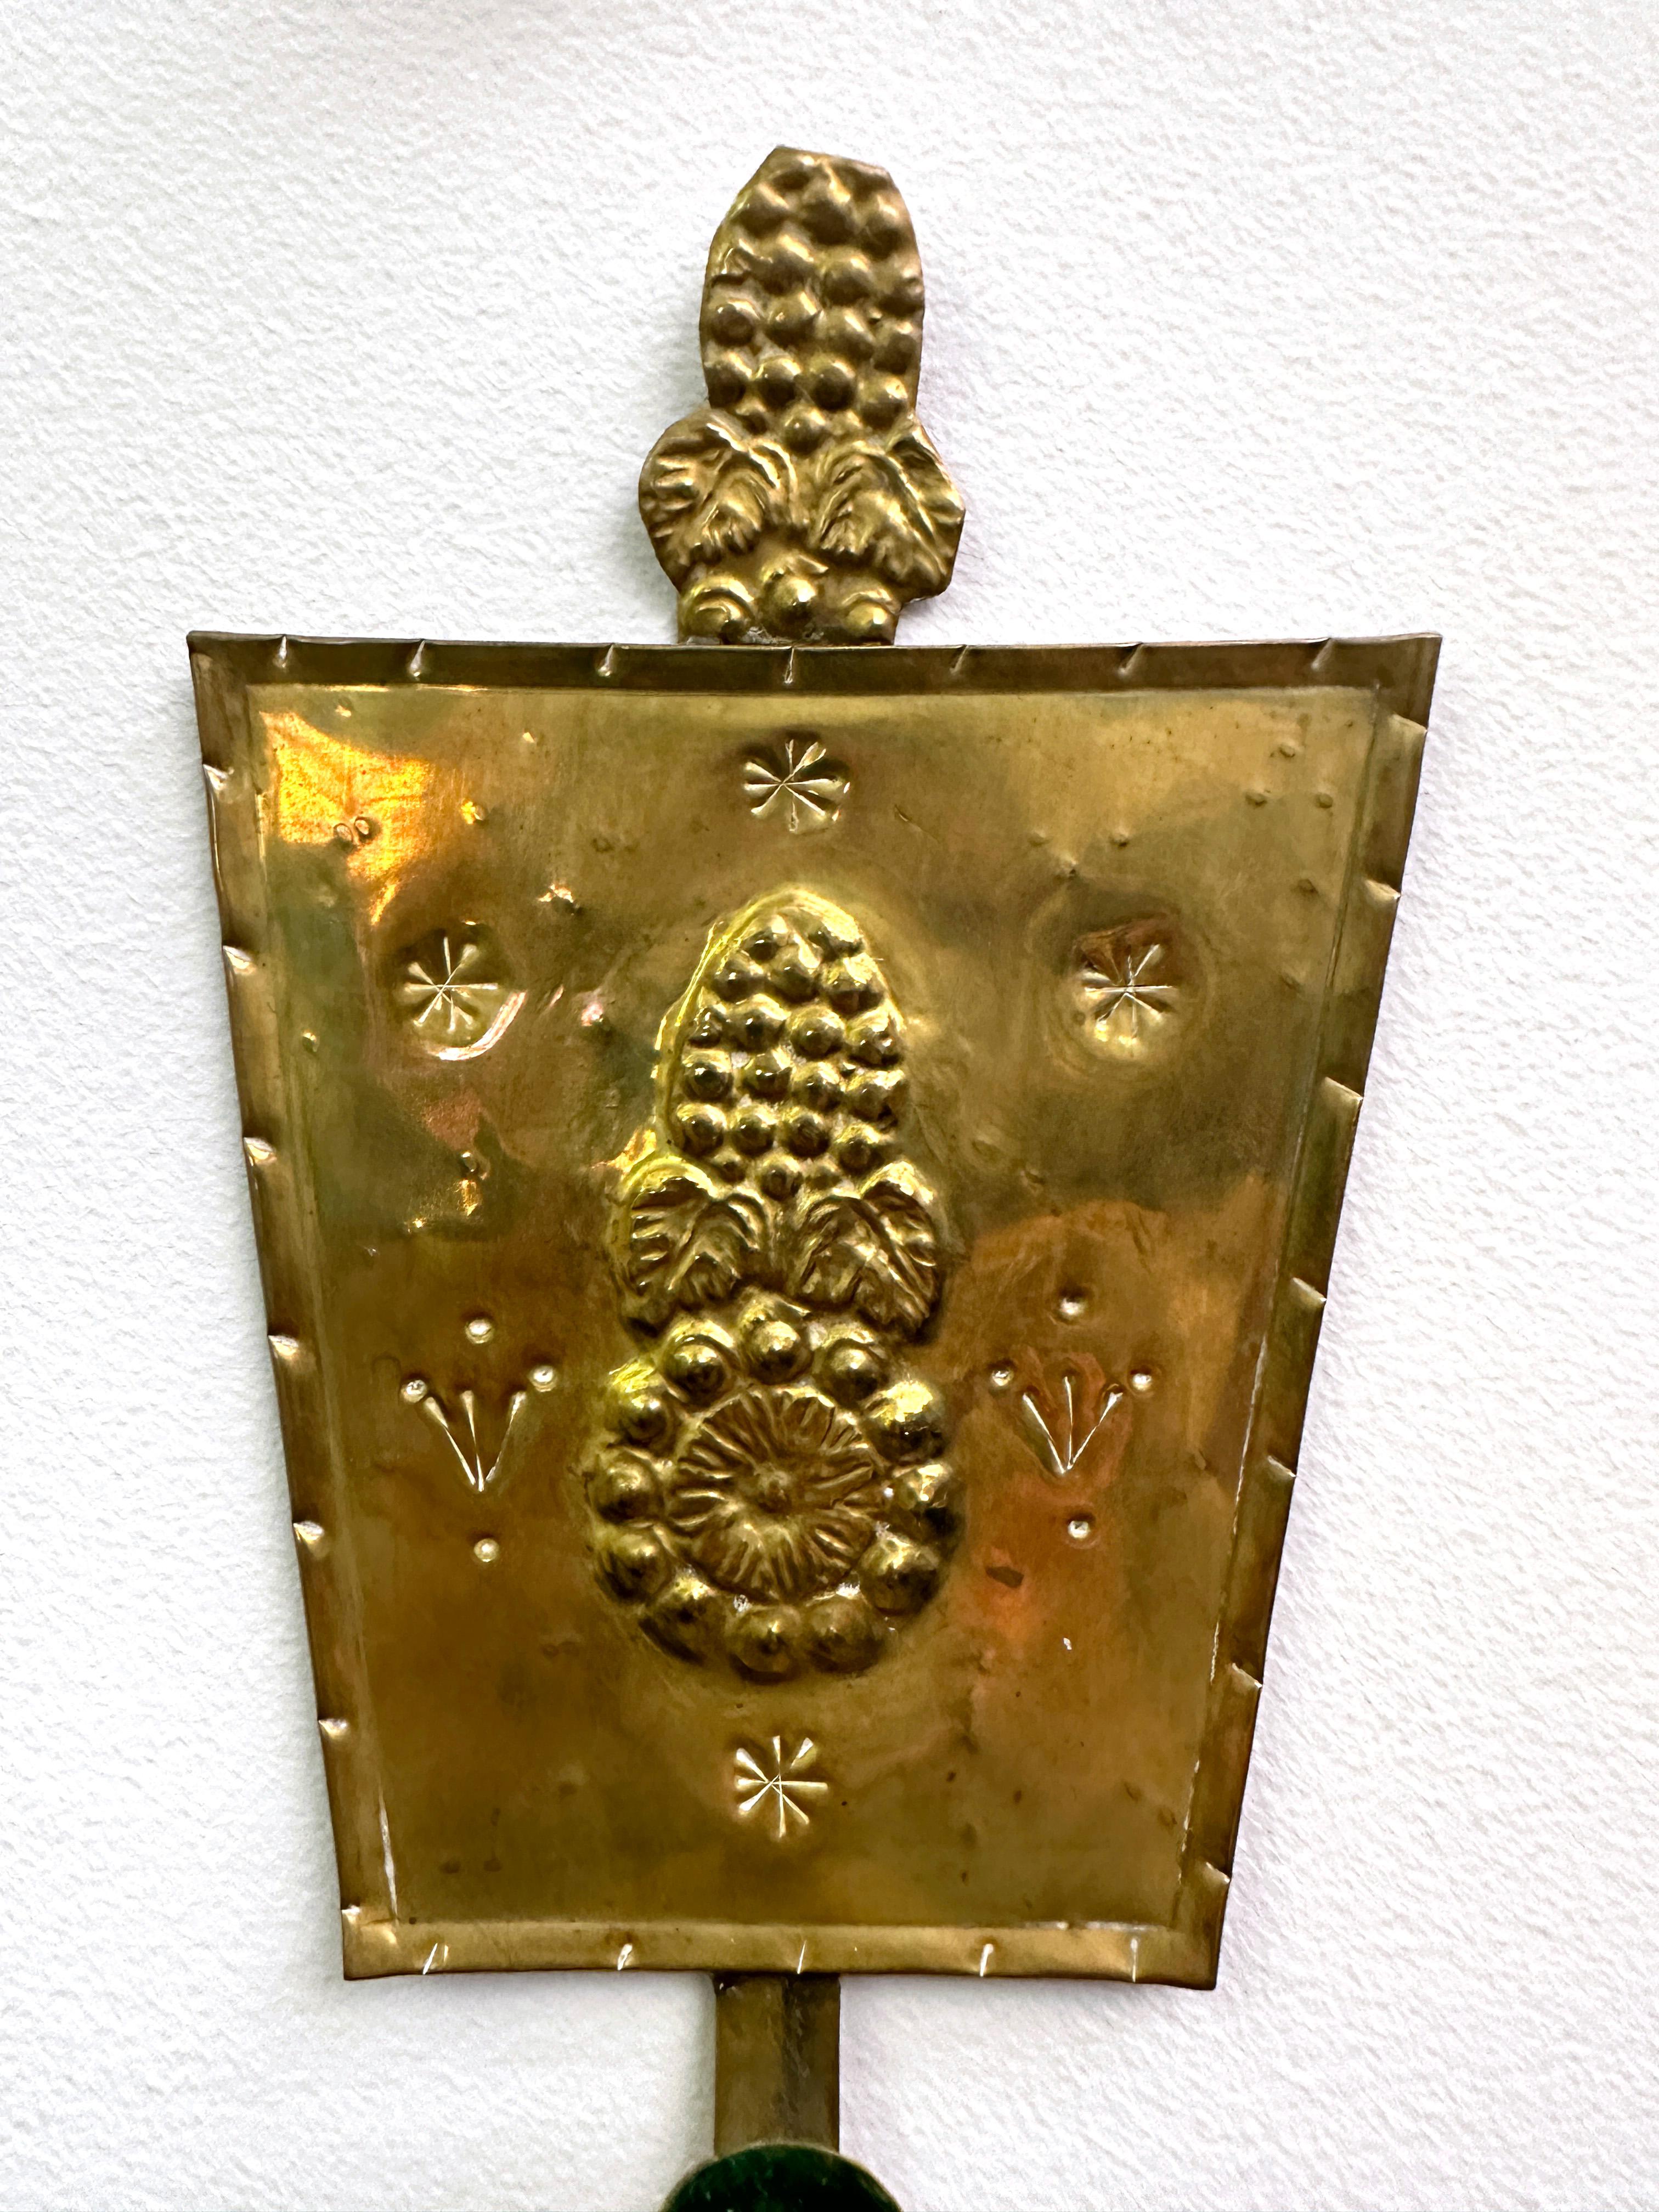 Ein Paar schwedische Arts & Crafts Messing-Repoussé-Wandkerzenleuchter. CIRCA, Anfang des 20. Jahrhunderts. Von trapezförmiger Gestalt mit aufgesetzter Krone. Das Repoussé ist mit einer ovalen Hauptblumenform verziert, die von kleineren geschnitzten